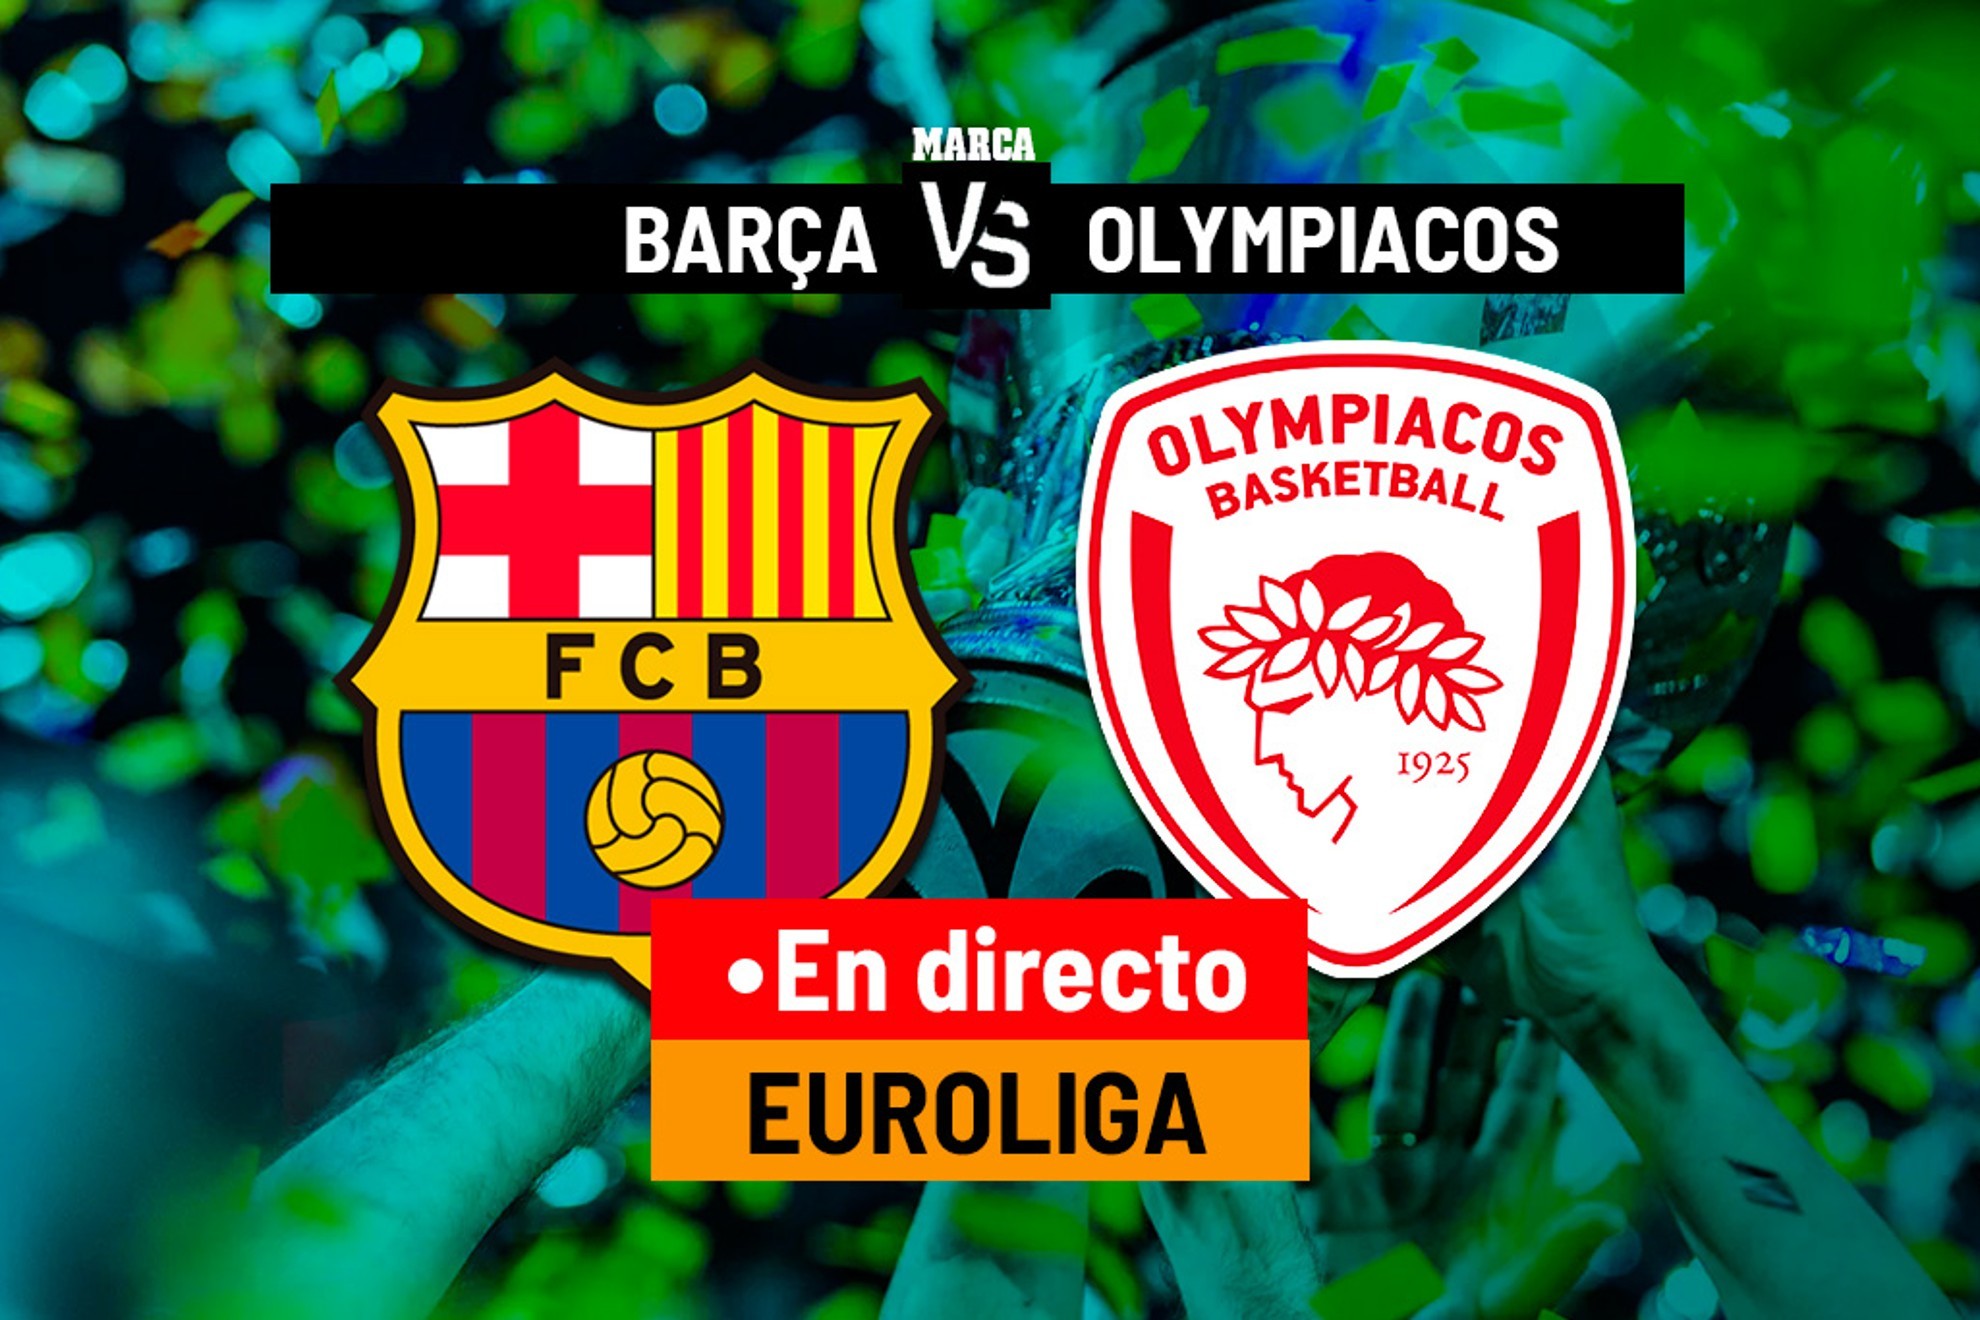 Euroliga: Barcelona – Olympiacos en directo: Euroliga hoy, en directo